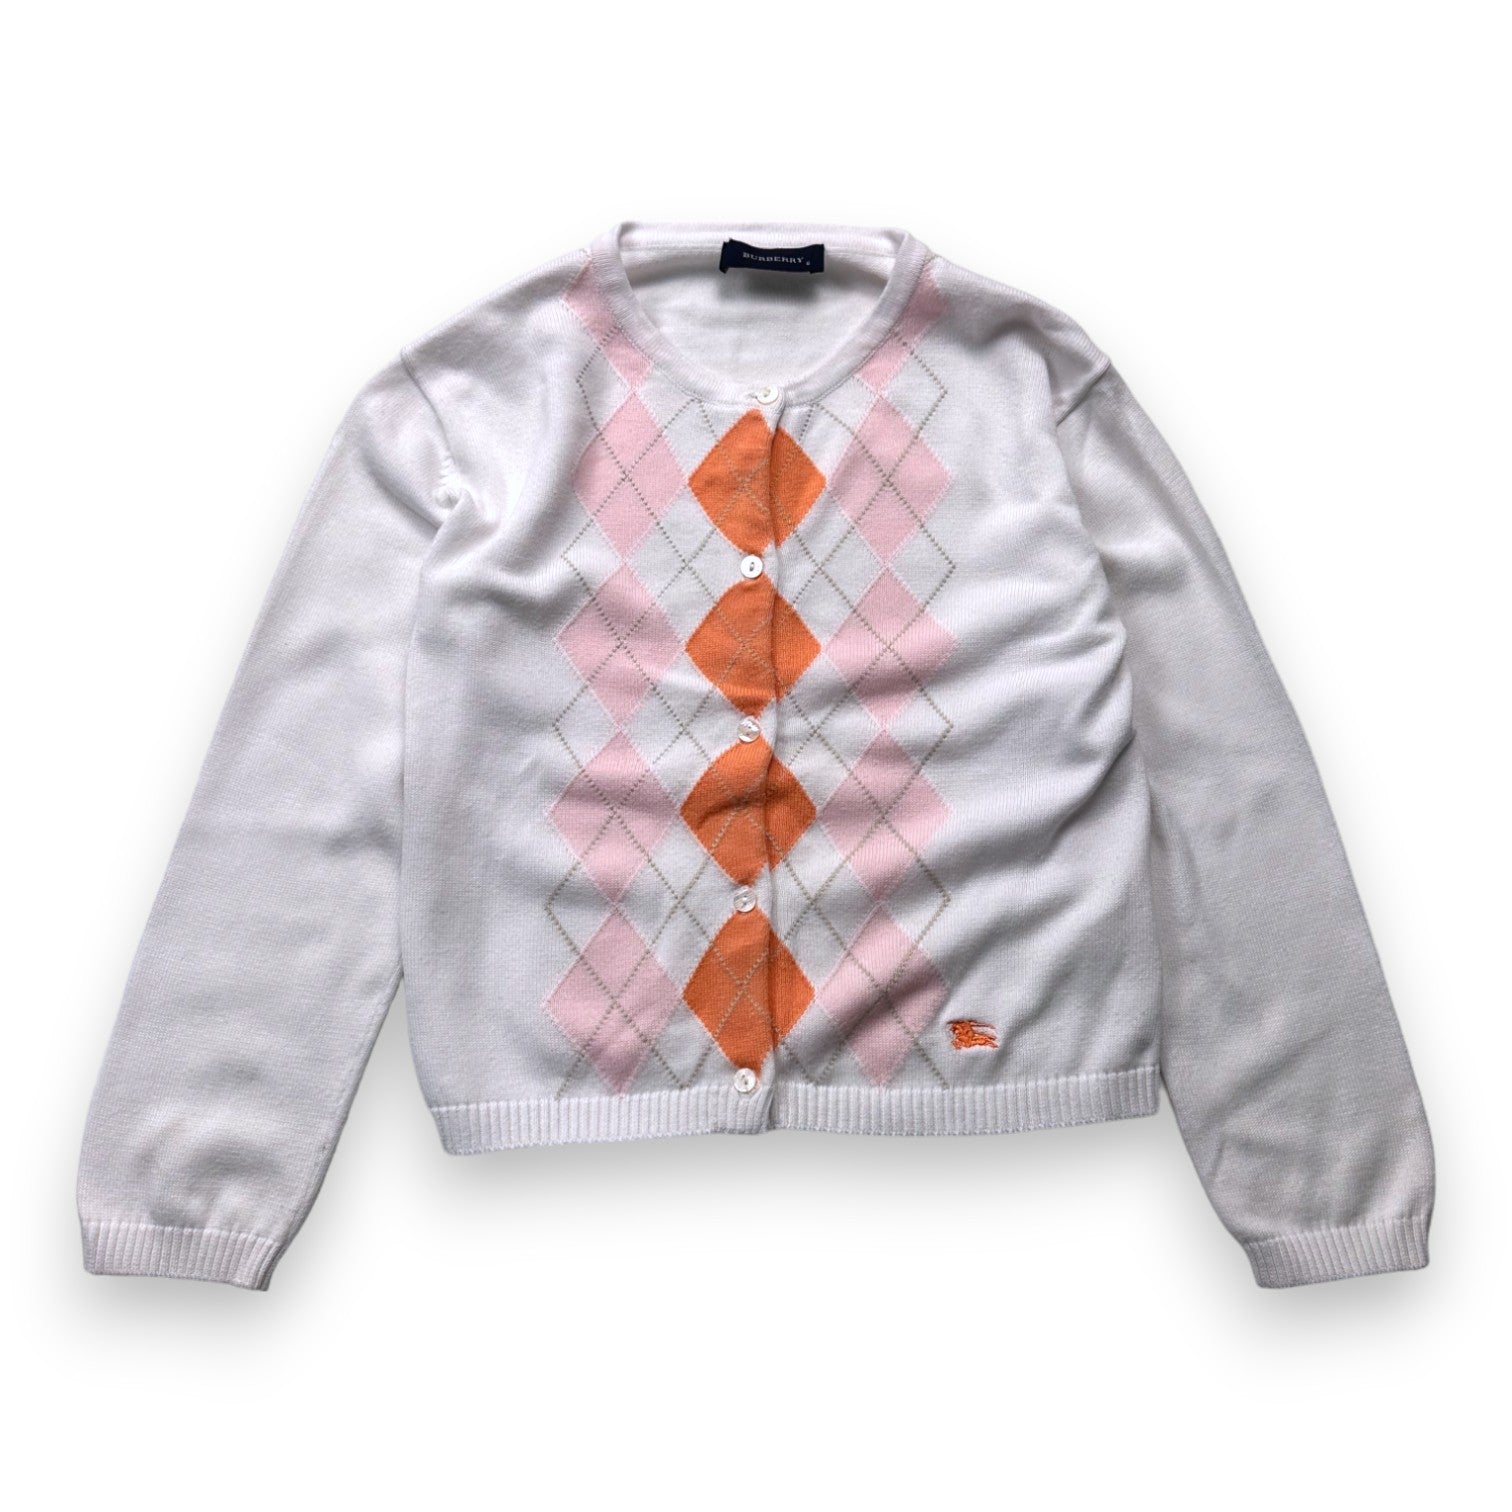 BURBERRY - Cardigan blanc à carreaux roses et oranges - 6 ans